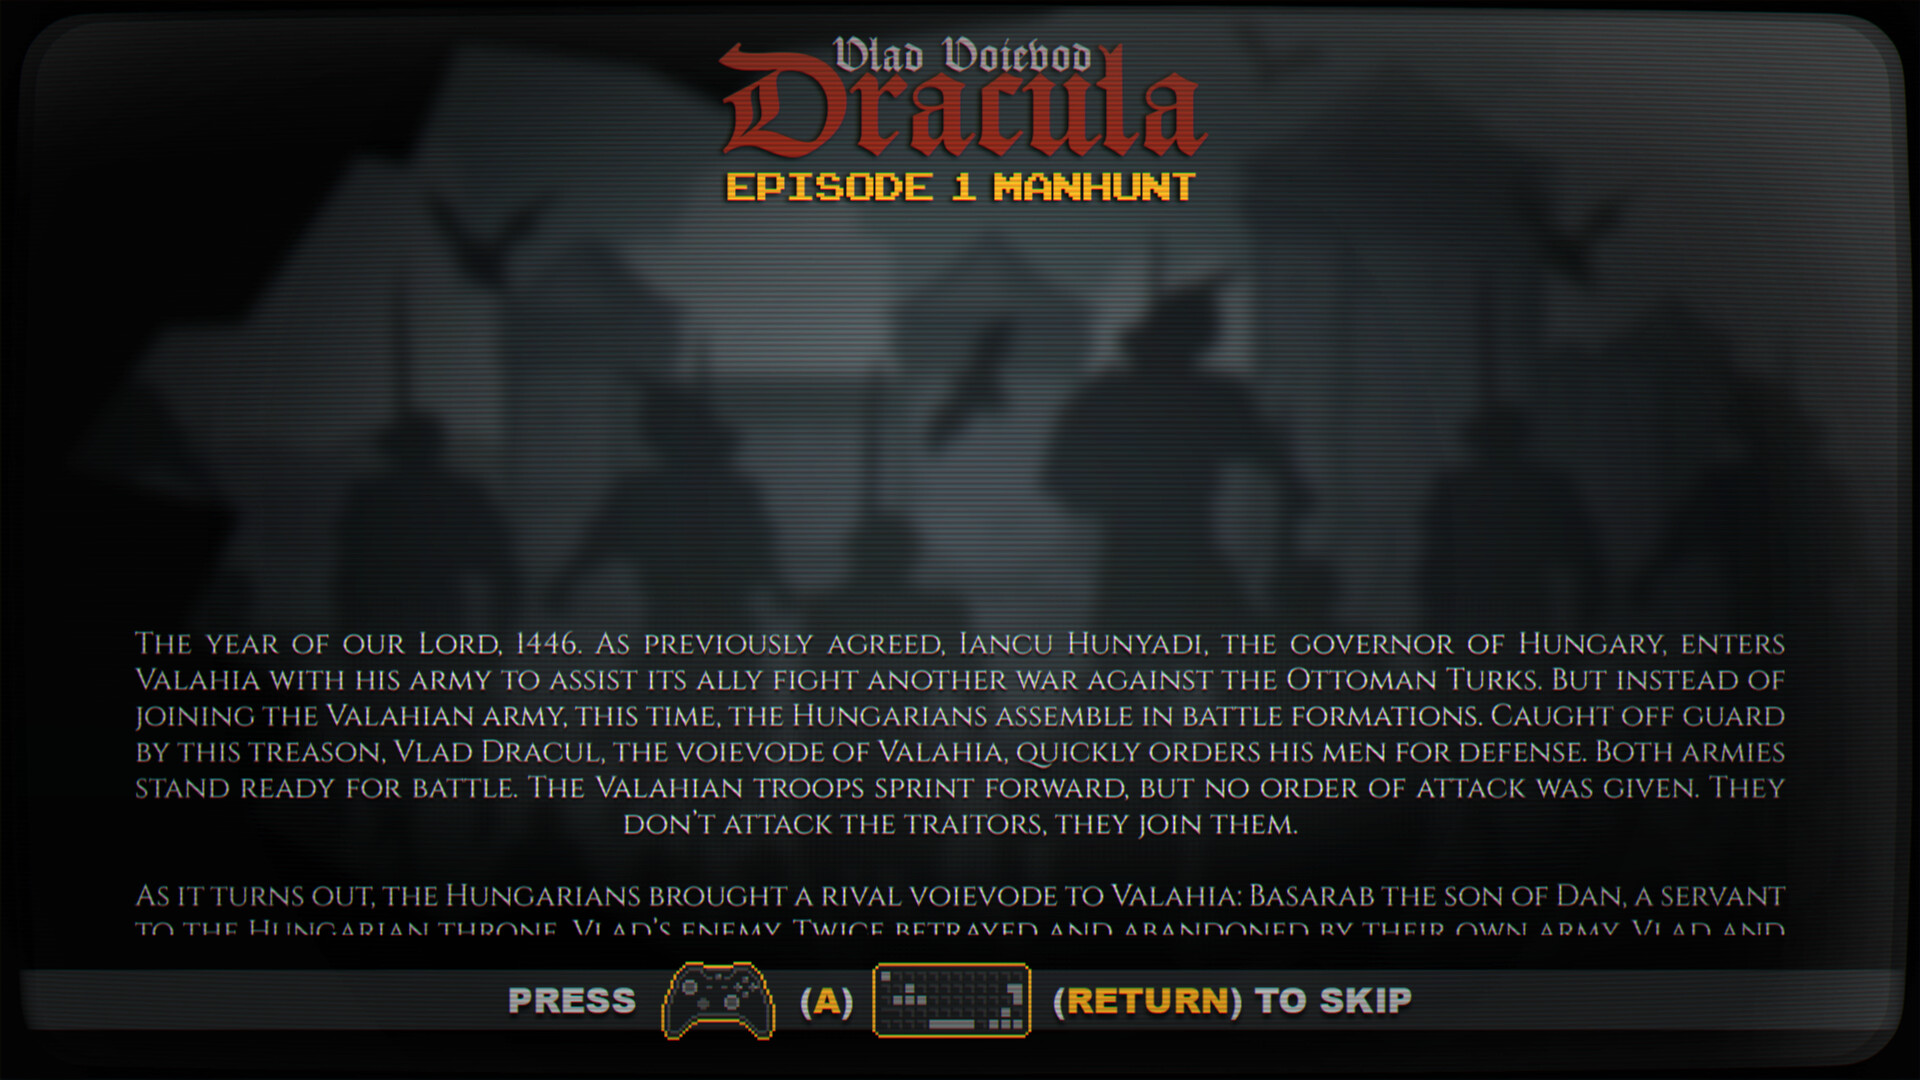 Vlad Voievod Dracula. Episode 1 Manhunt Steam CD Key